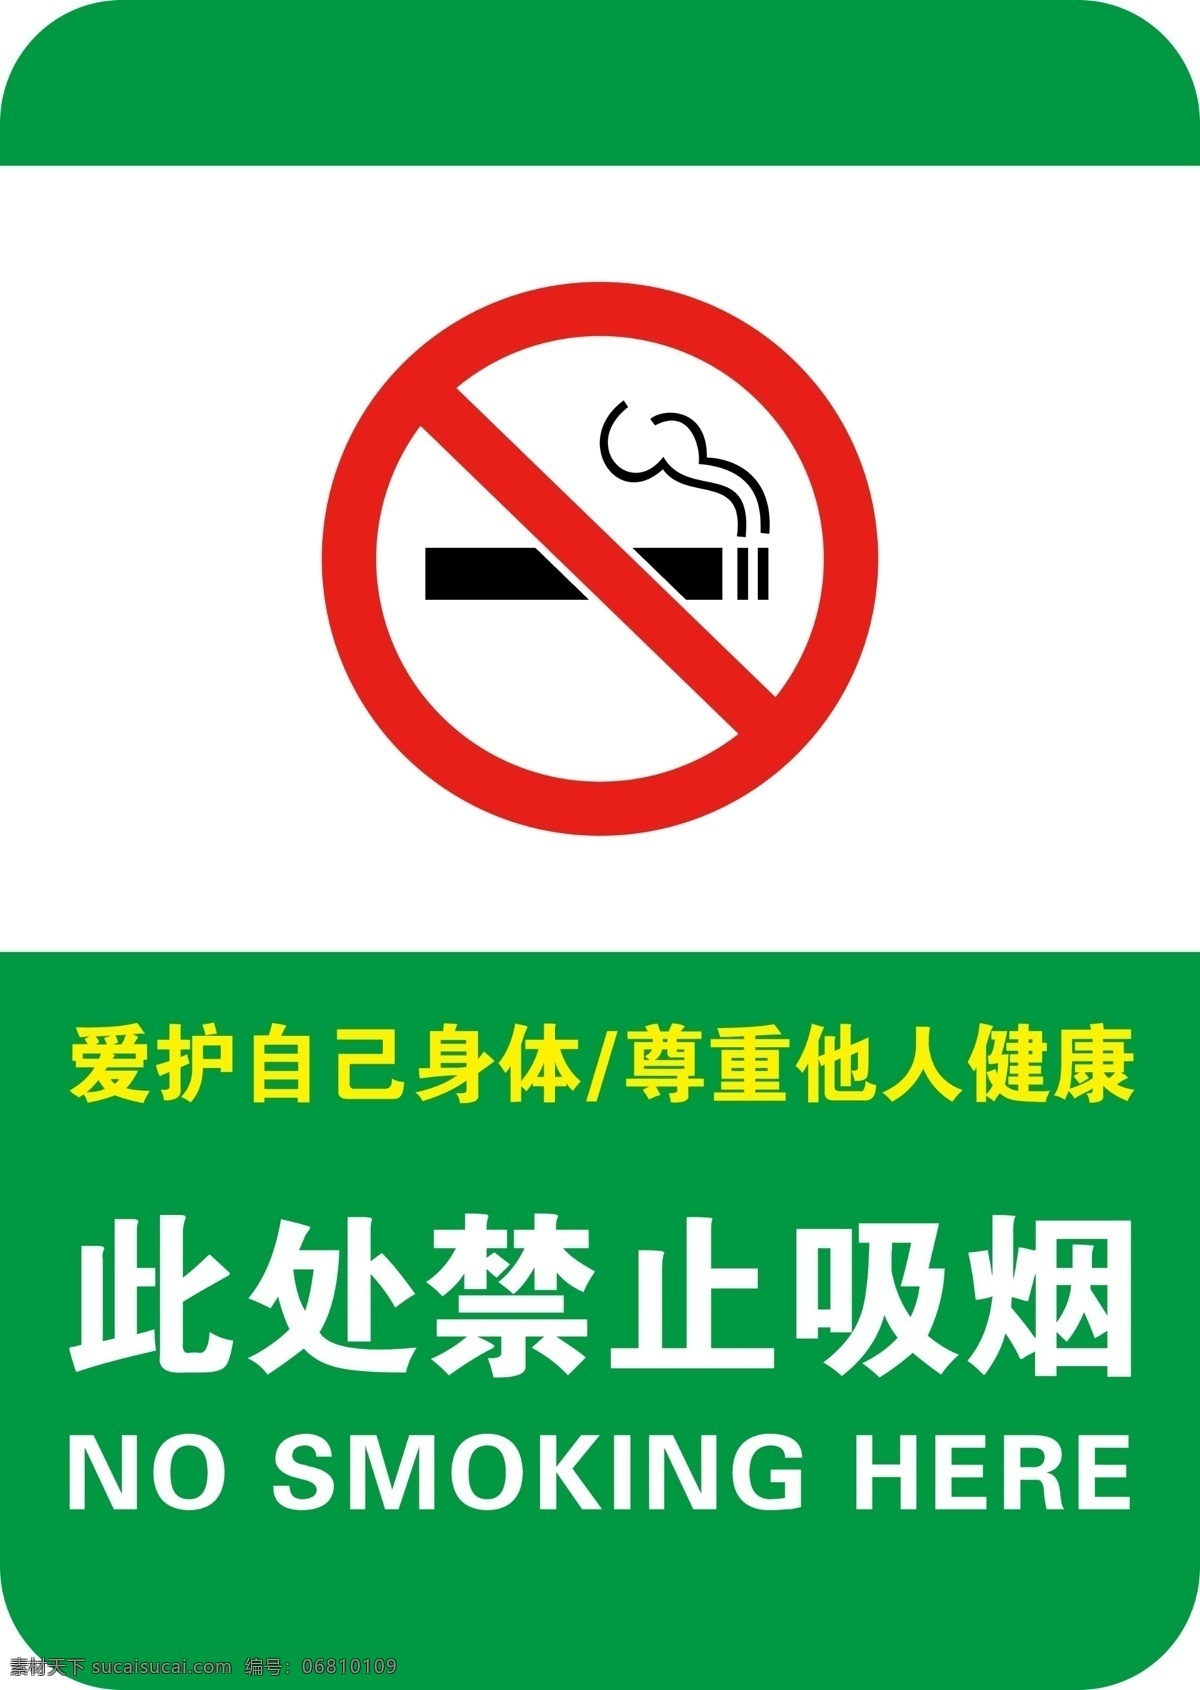 禁止吸烟图片 禁止吸烟 无烟区 吸烟 吸烟展板 吸烟宣传 禁烟 标志物 指引牌 提示语 吸烟提示语 爱护身体 尊重他人 展板模板